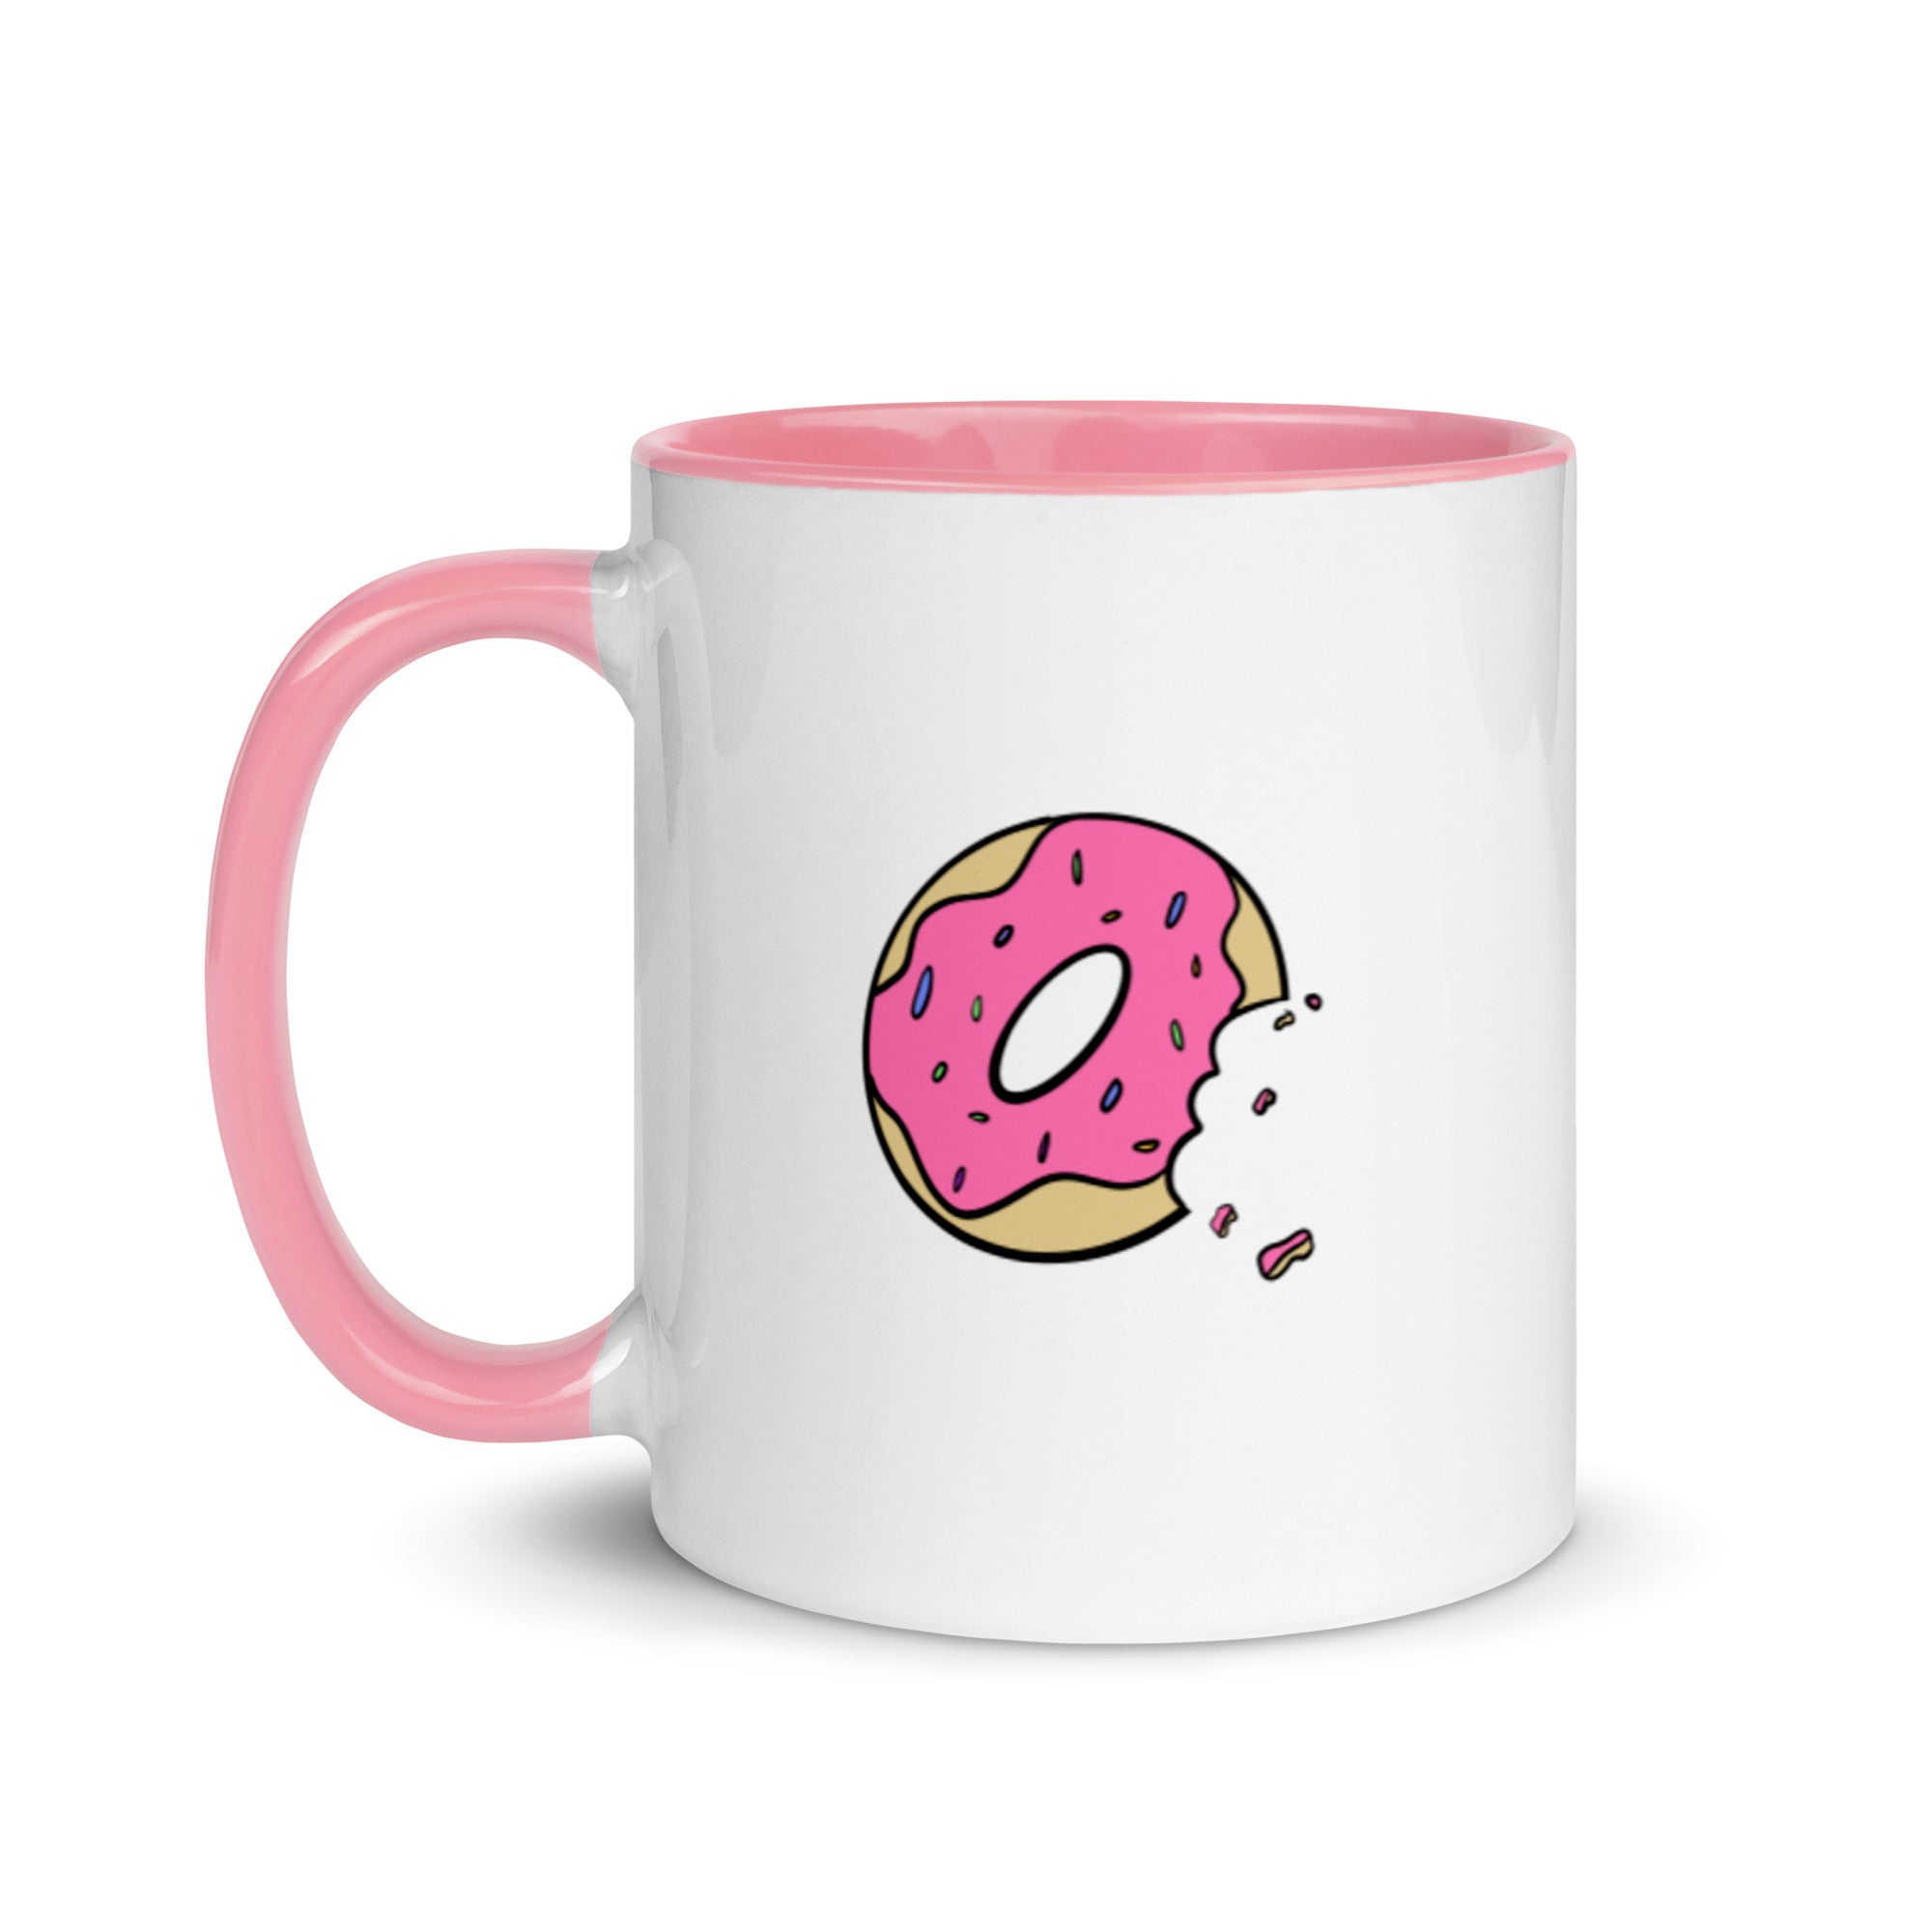 Donut - Mug with Color Inside